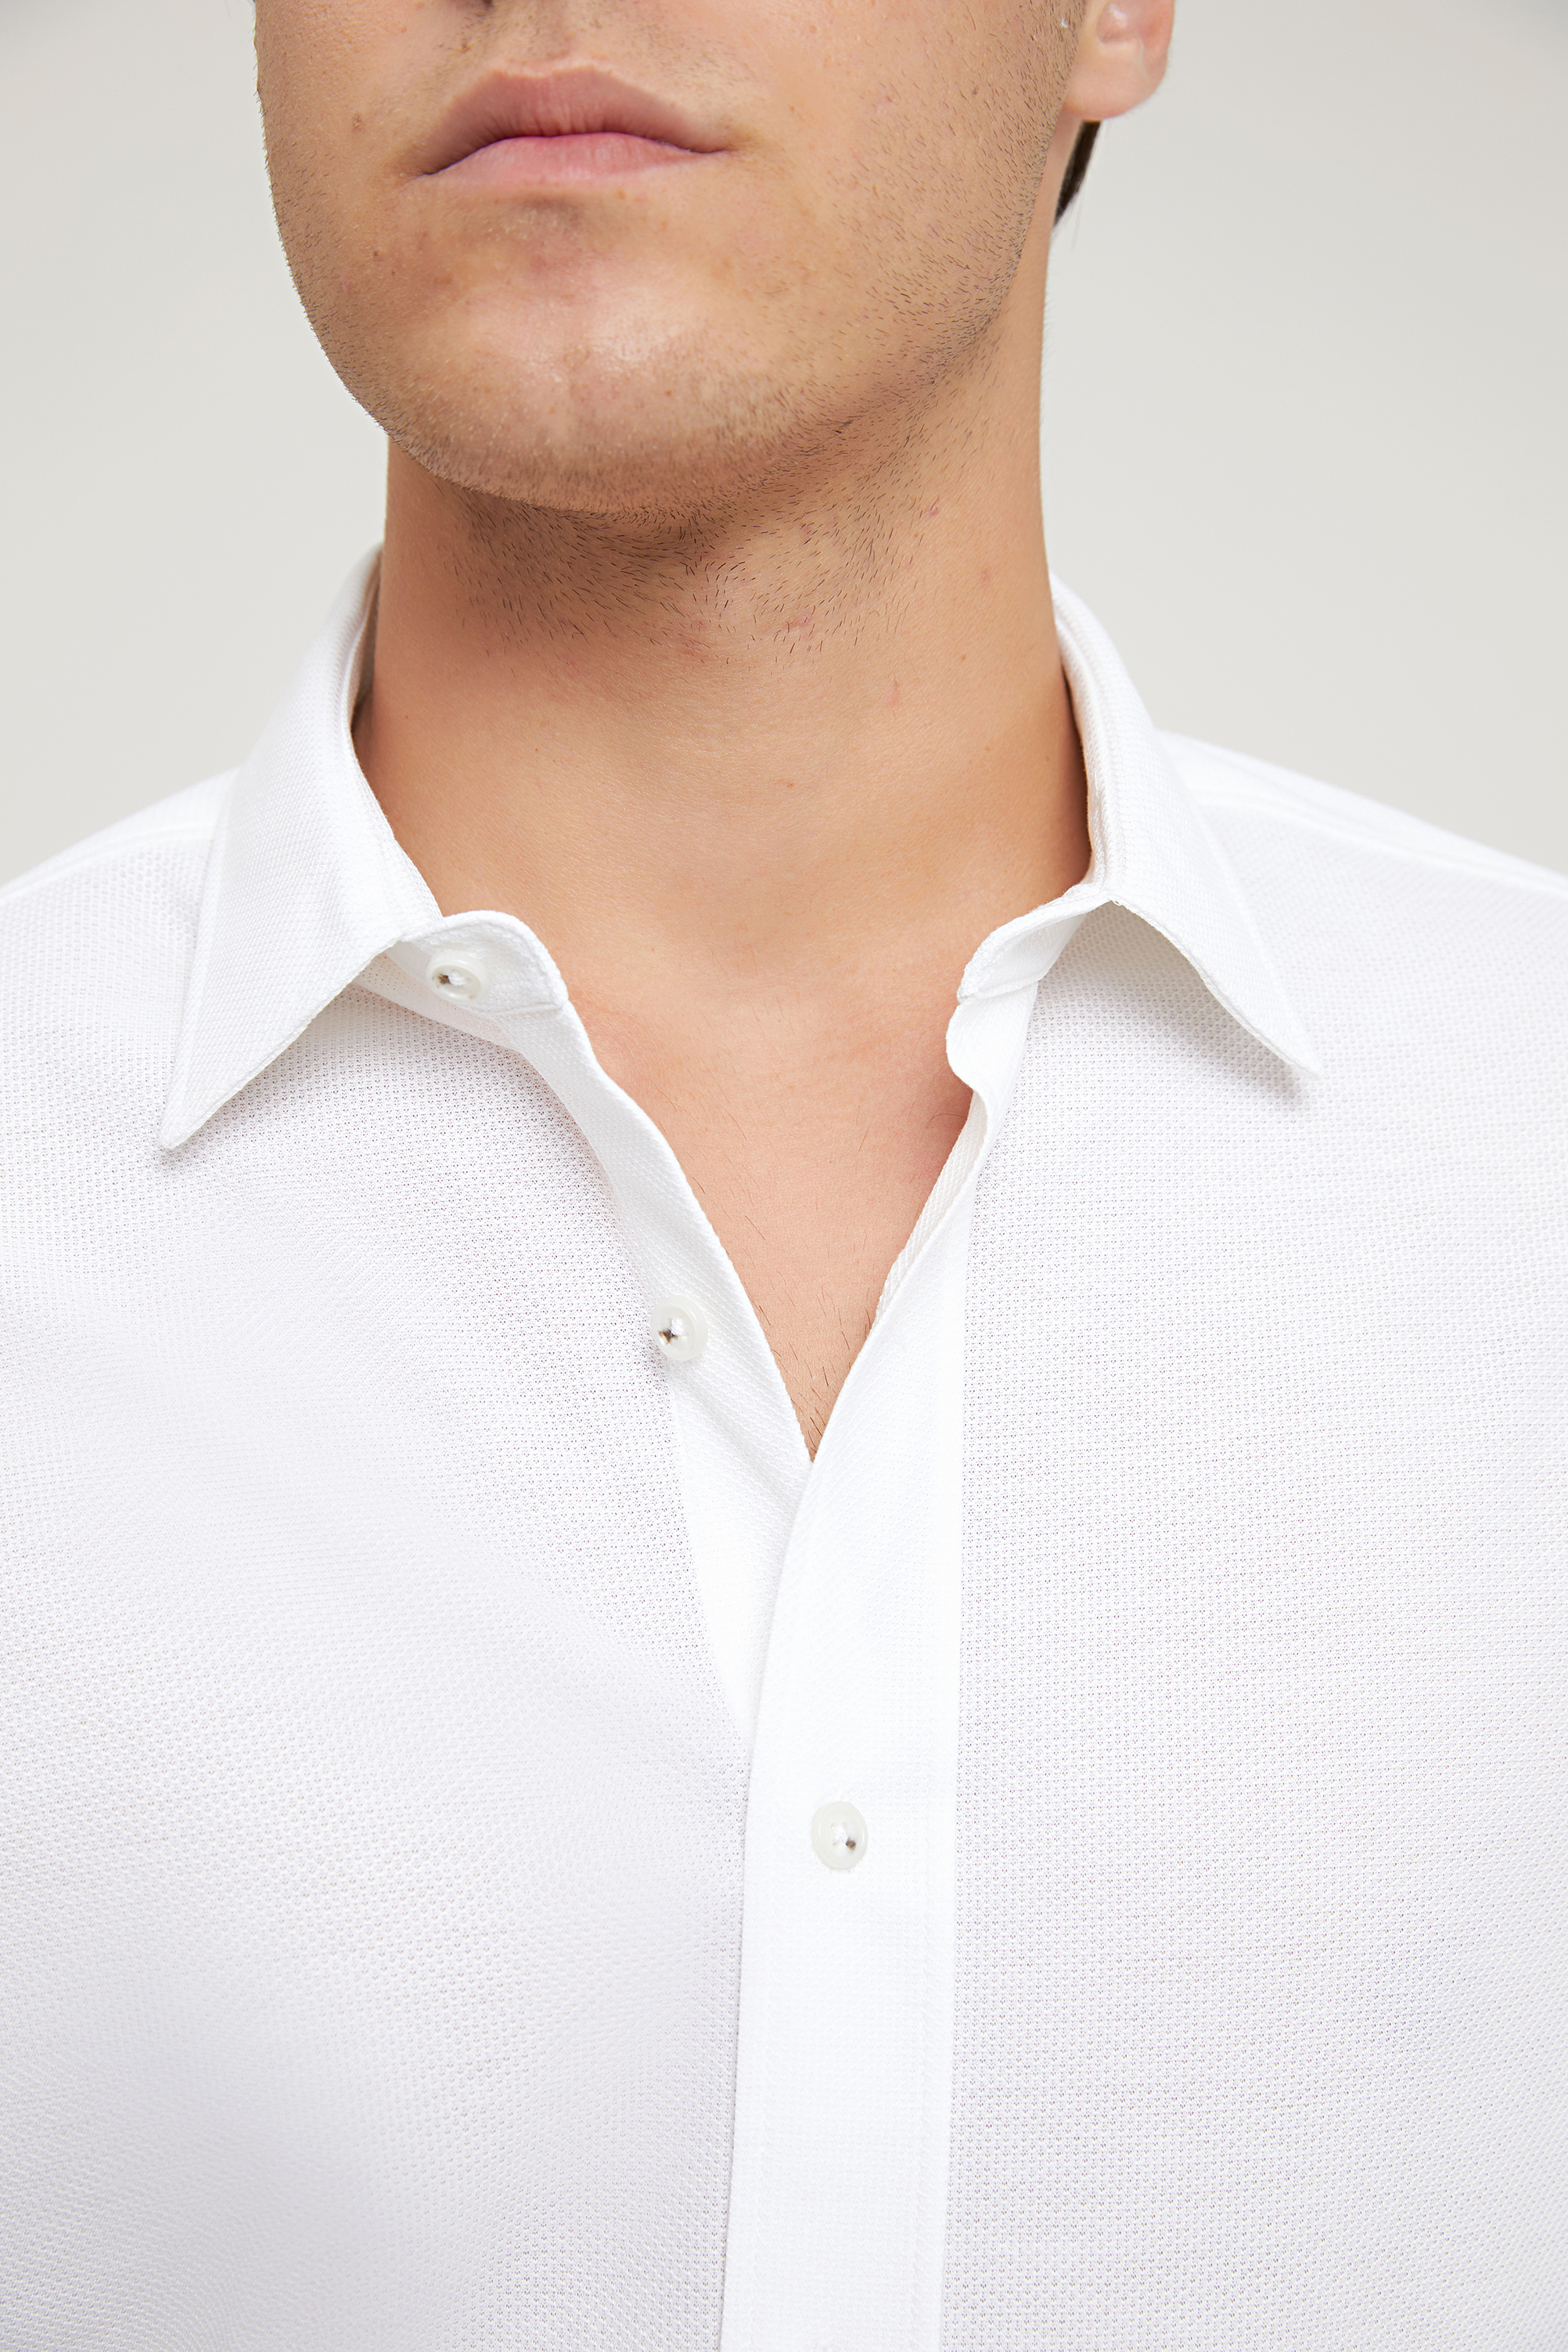 Damat Tween Damat Slim Fit Beyaz Düz Örme Gömlek. 2